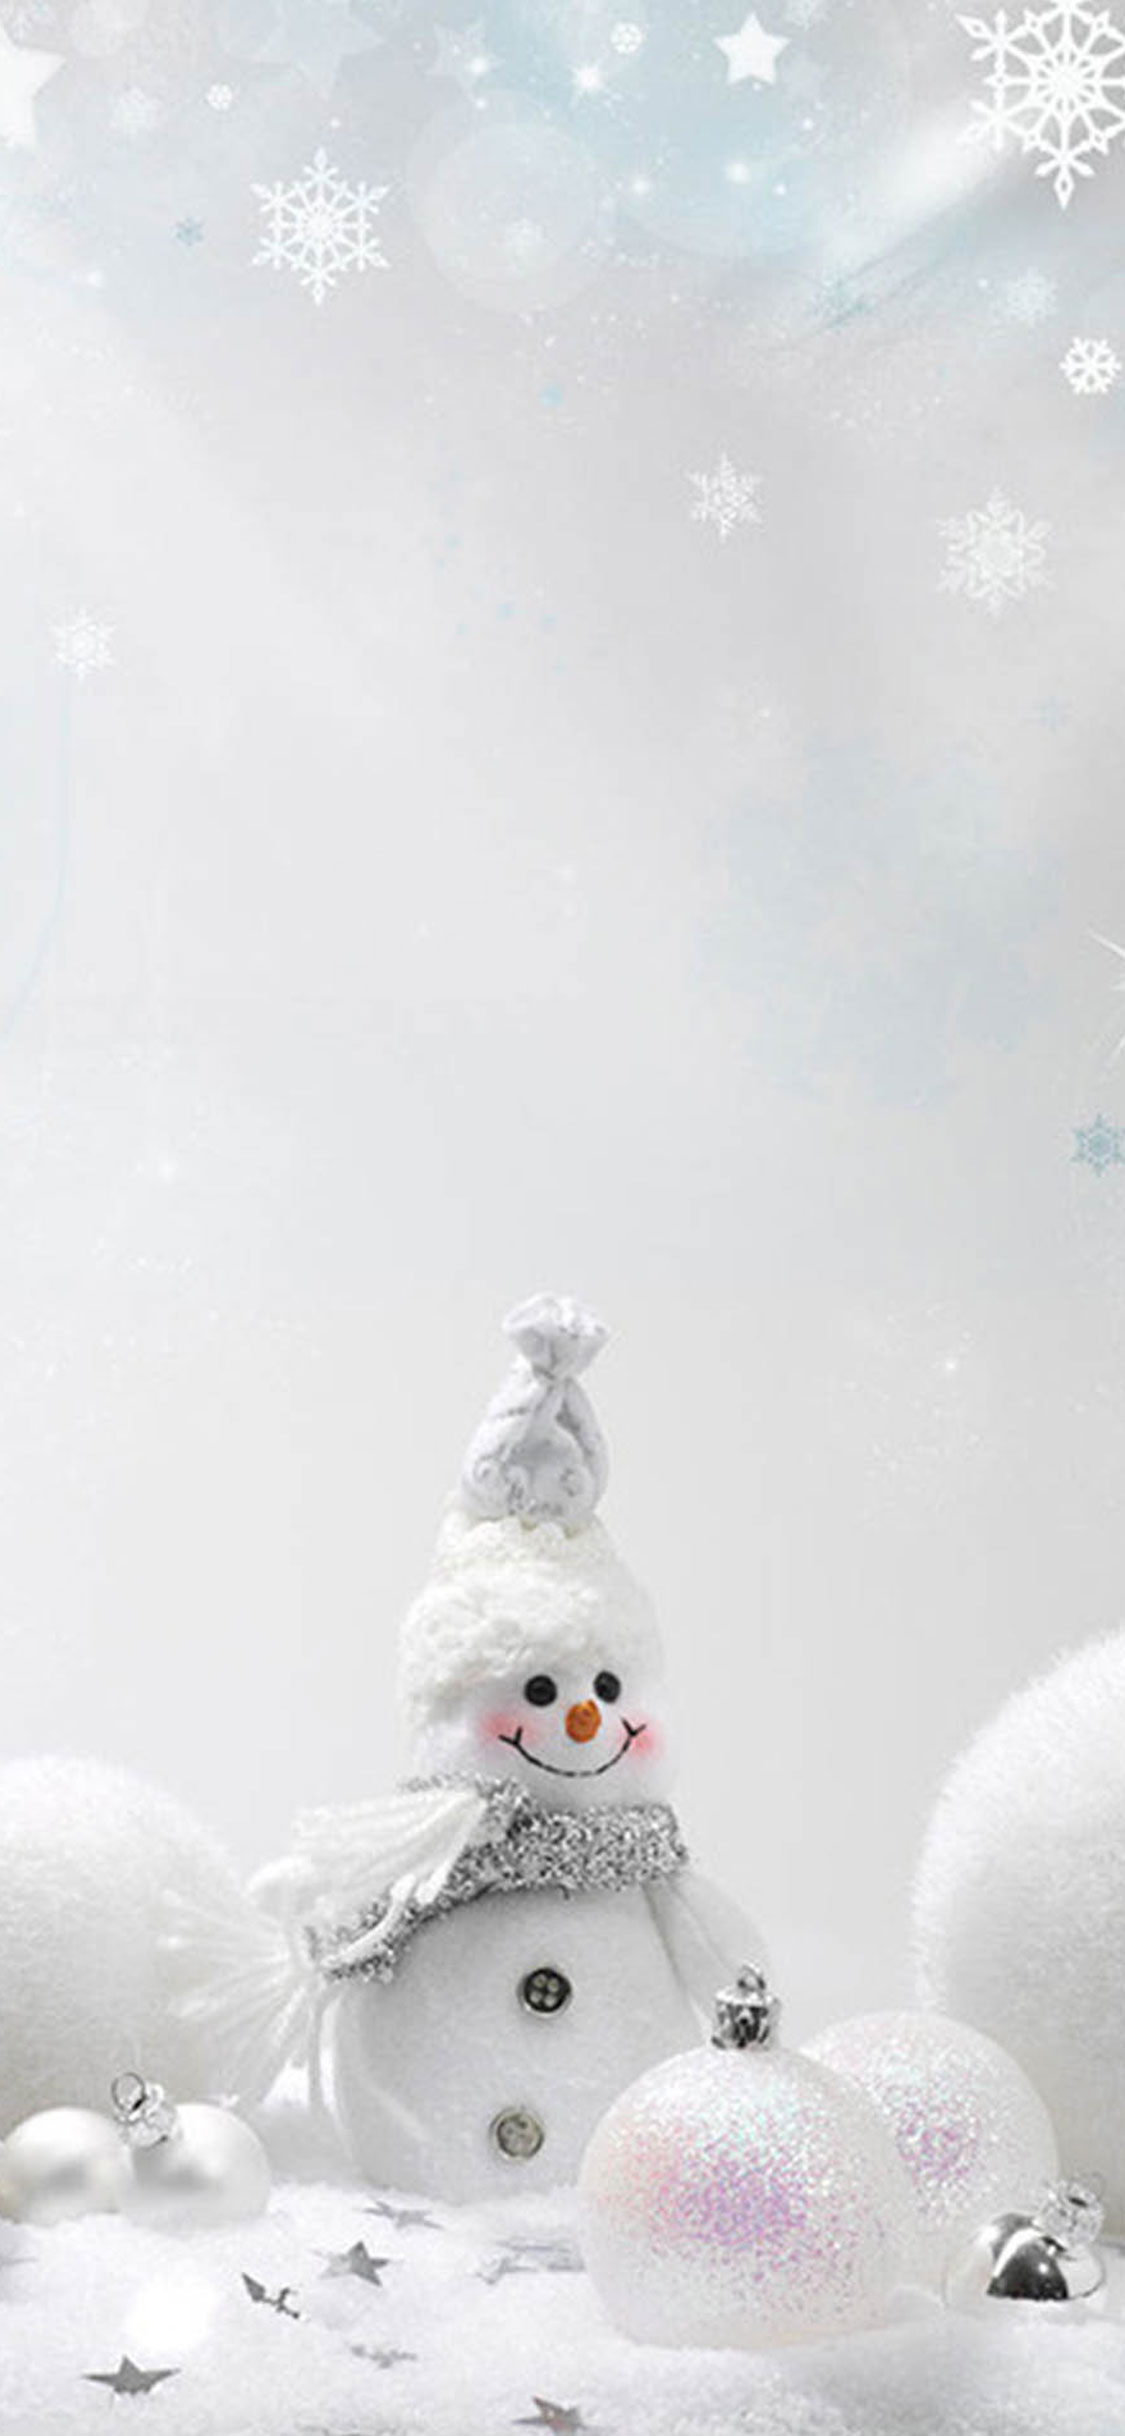 fond d'écran de bonhomme de neige de noël,blanc,bonhomme de neige,neige,personnage fictif,hiver